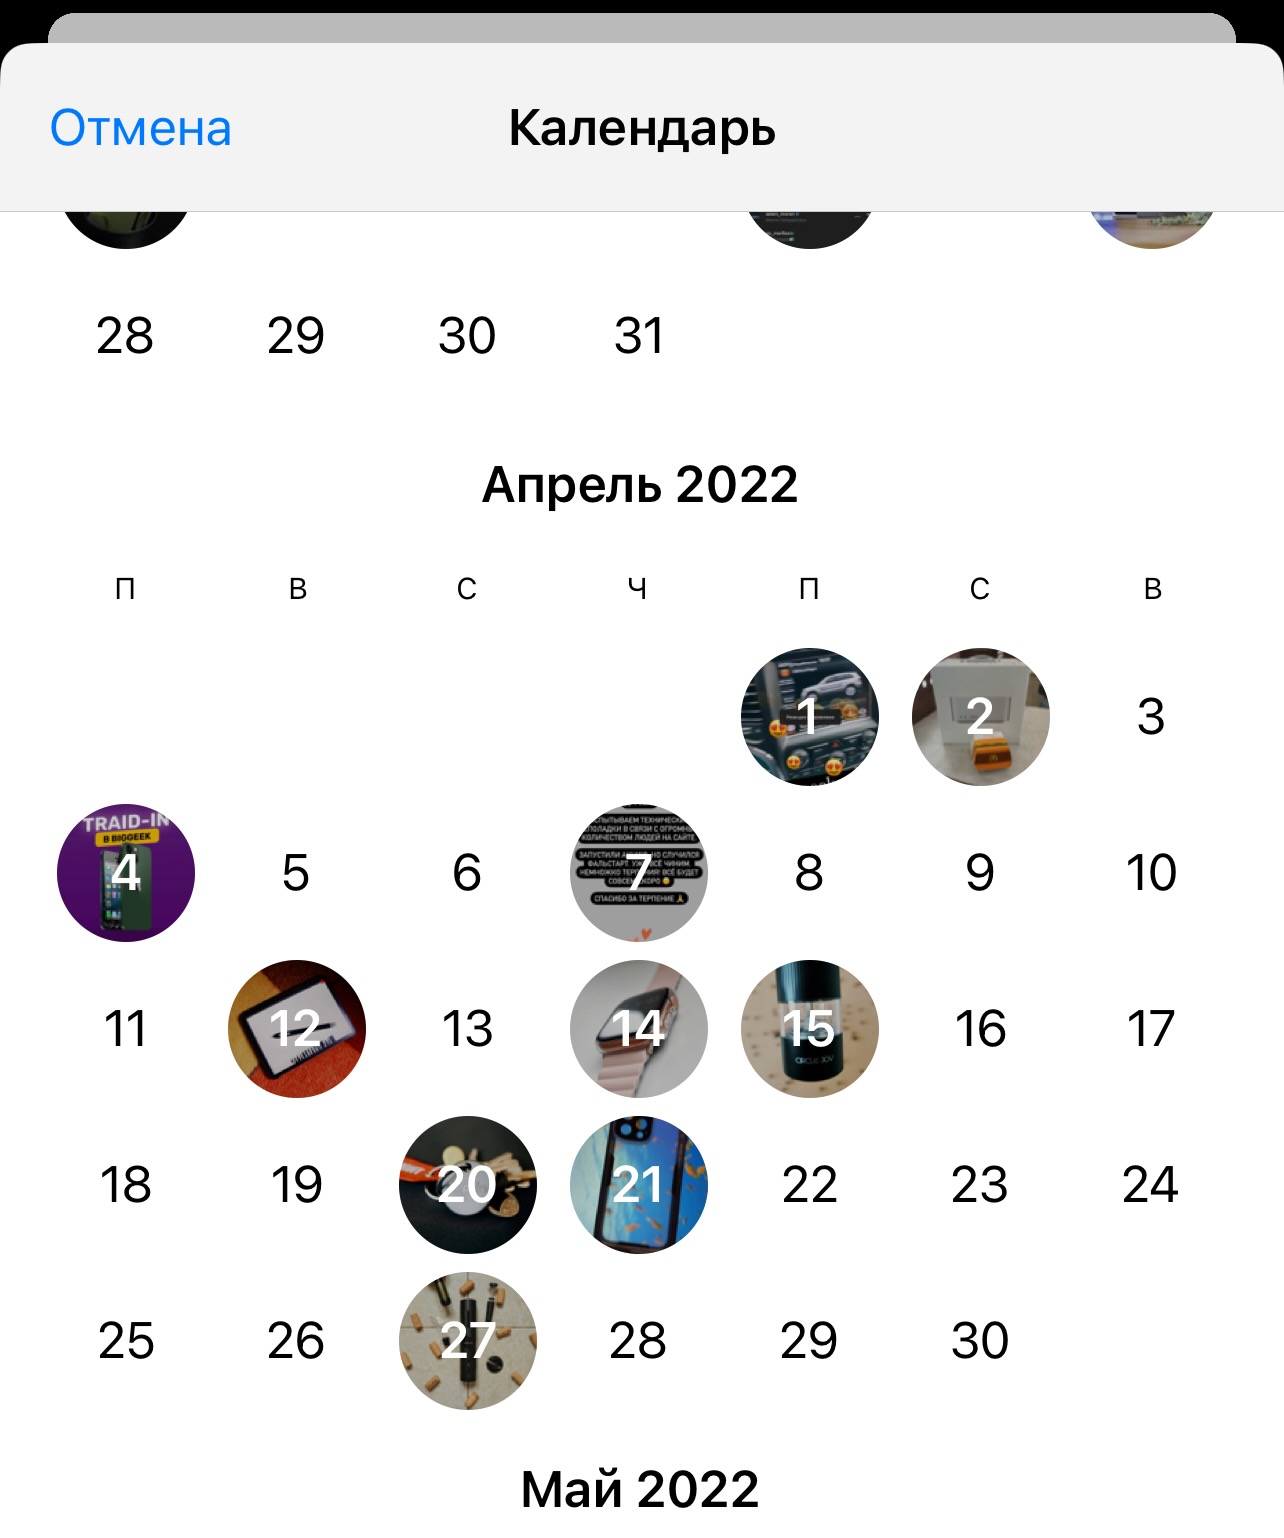 Календарь в телеграмме как открыть телеграмме на андроид фото 2